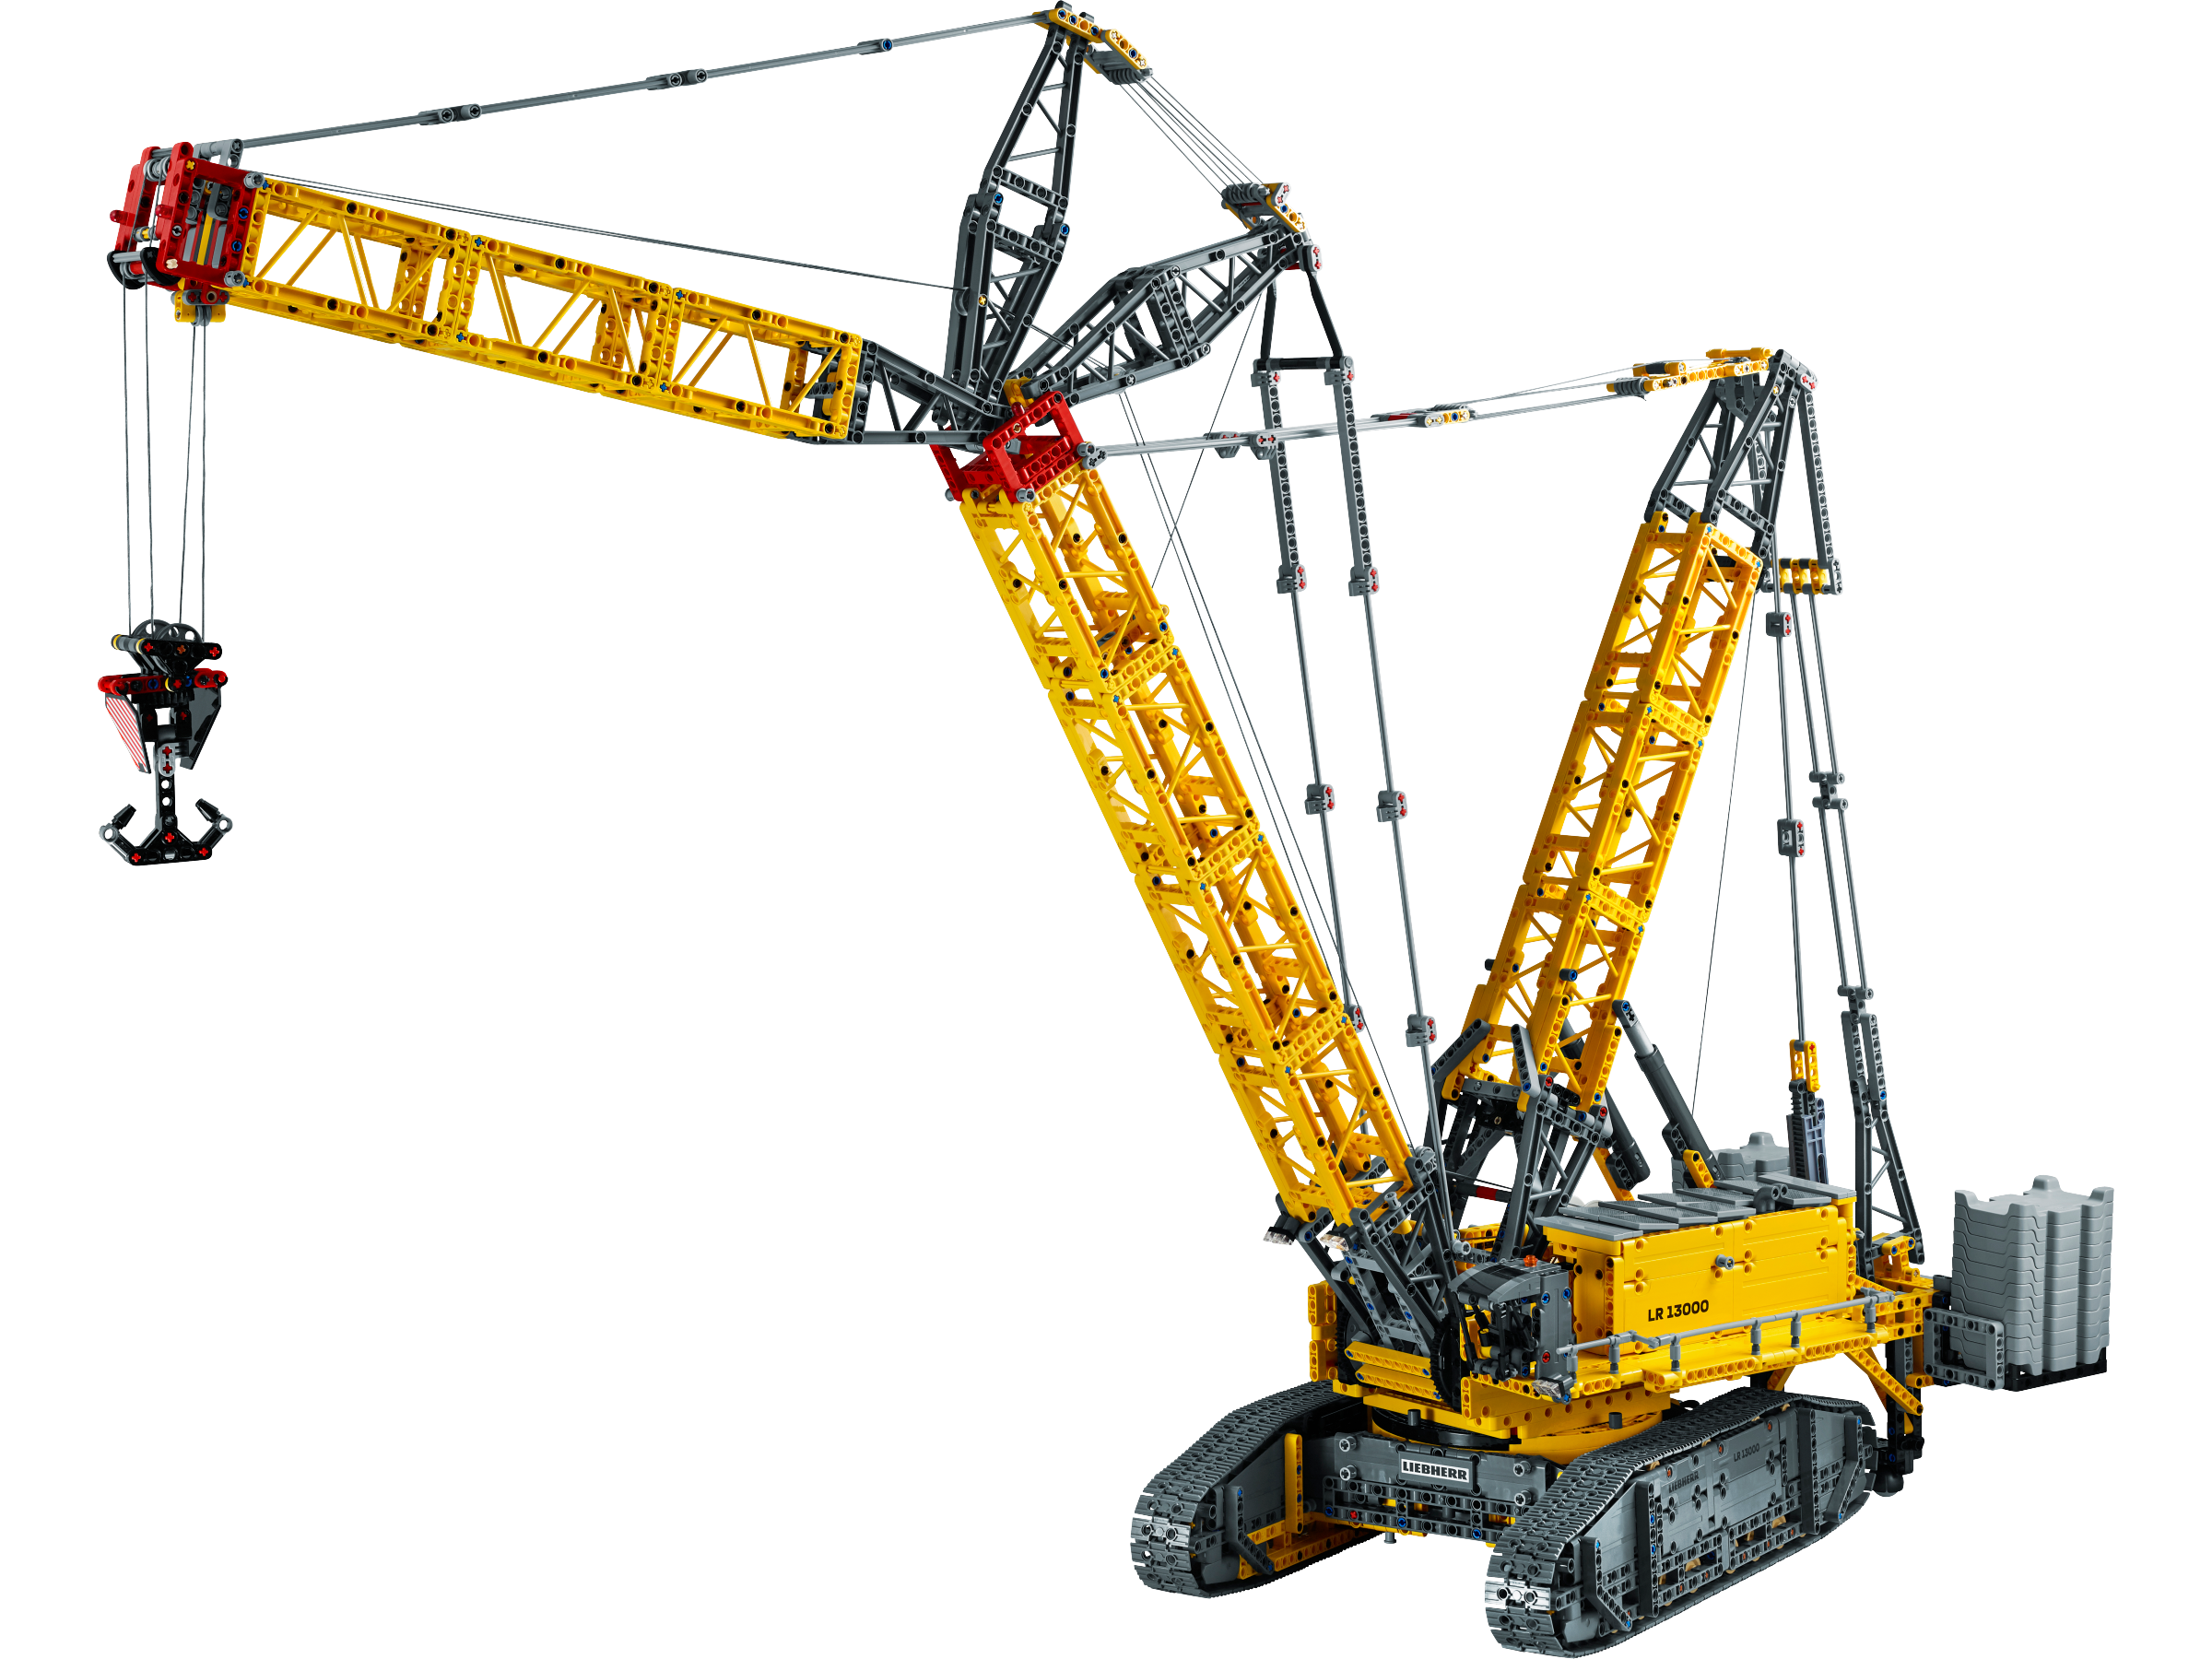 Implement underskud Stå på ski Liebherr Crawler Crane LR 13000 42146 | Technic™ | Buy online at the  Official LEGO® Shop US